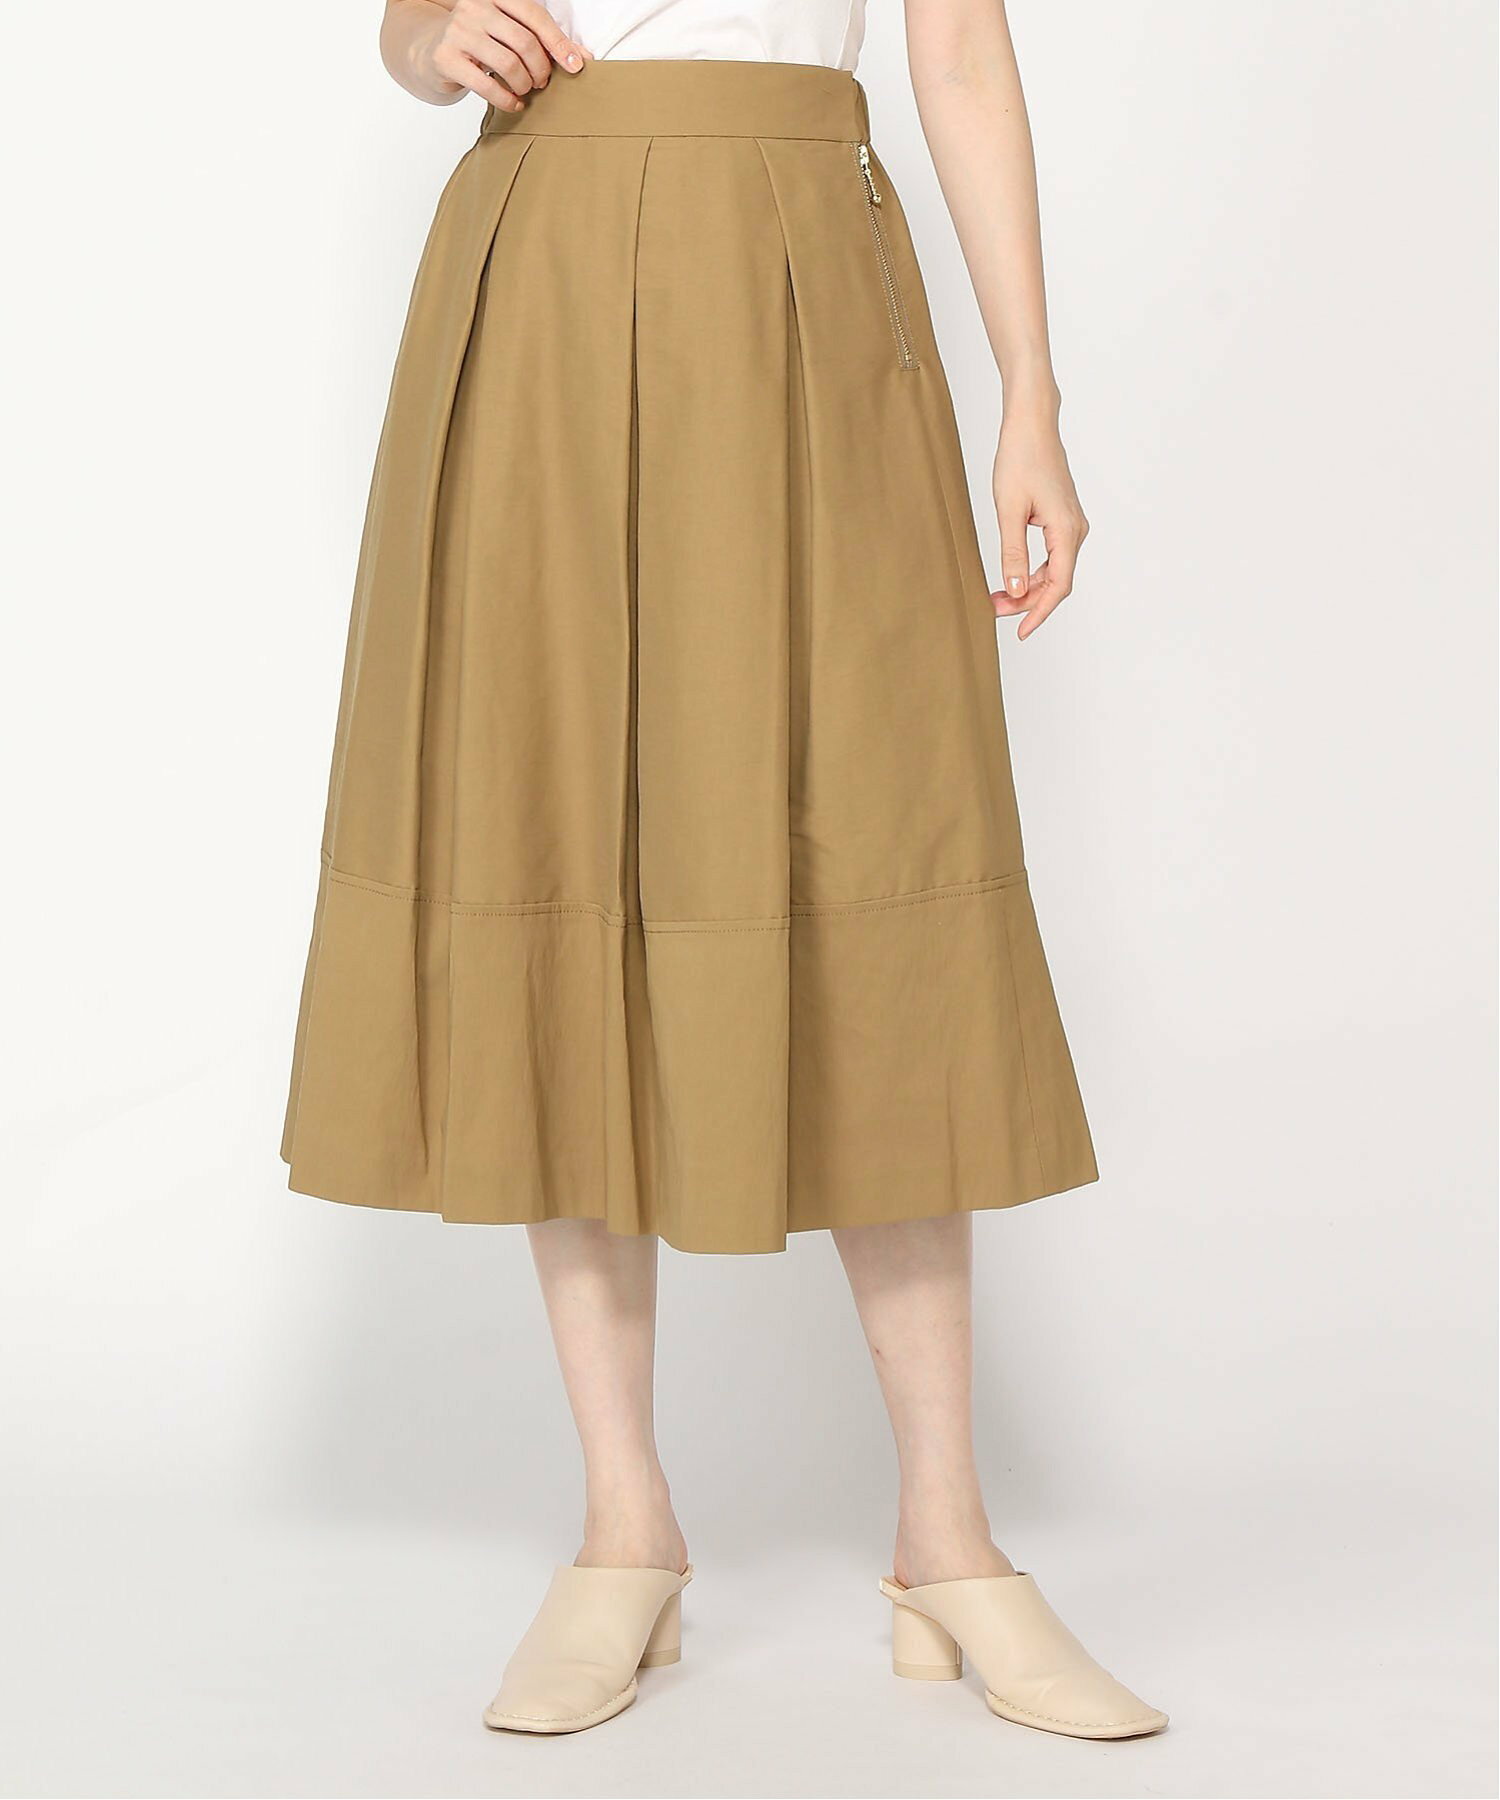 スカート:タックグログランスカート